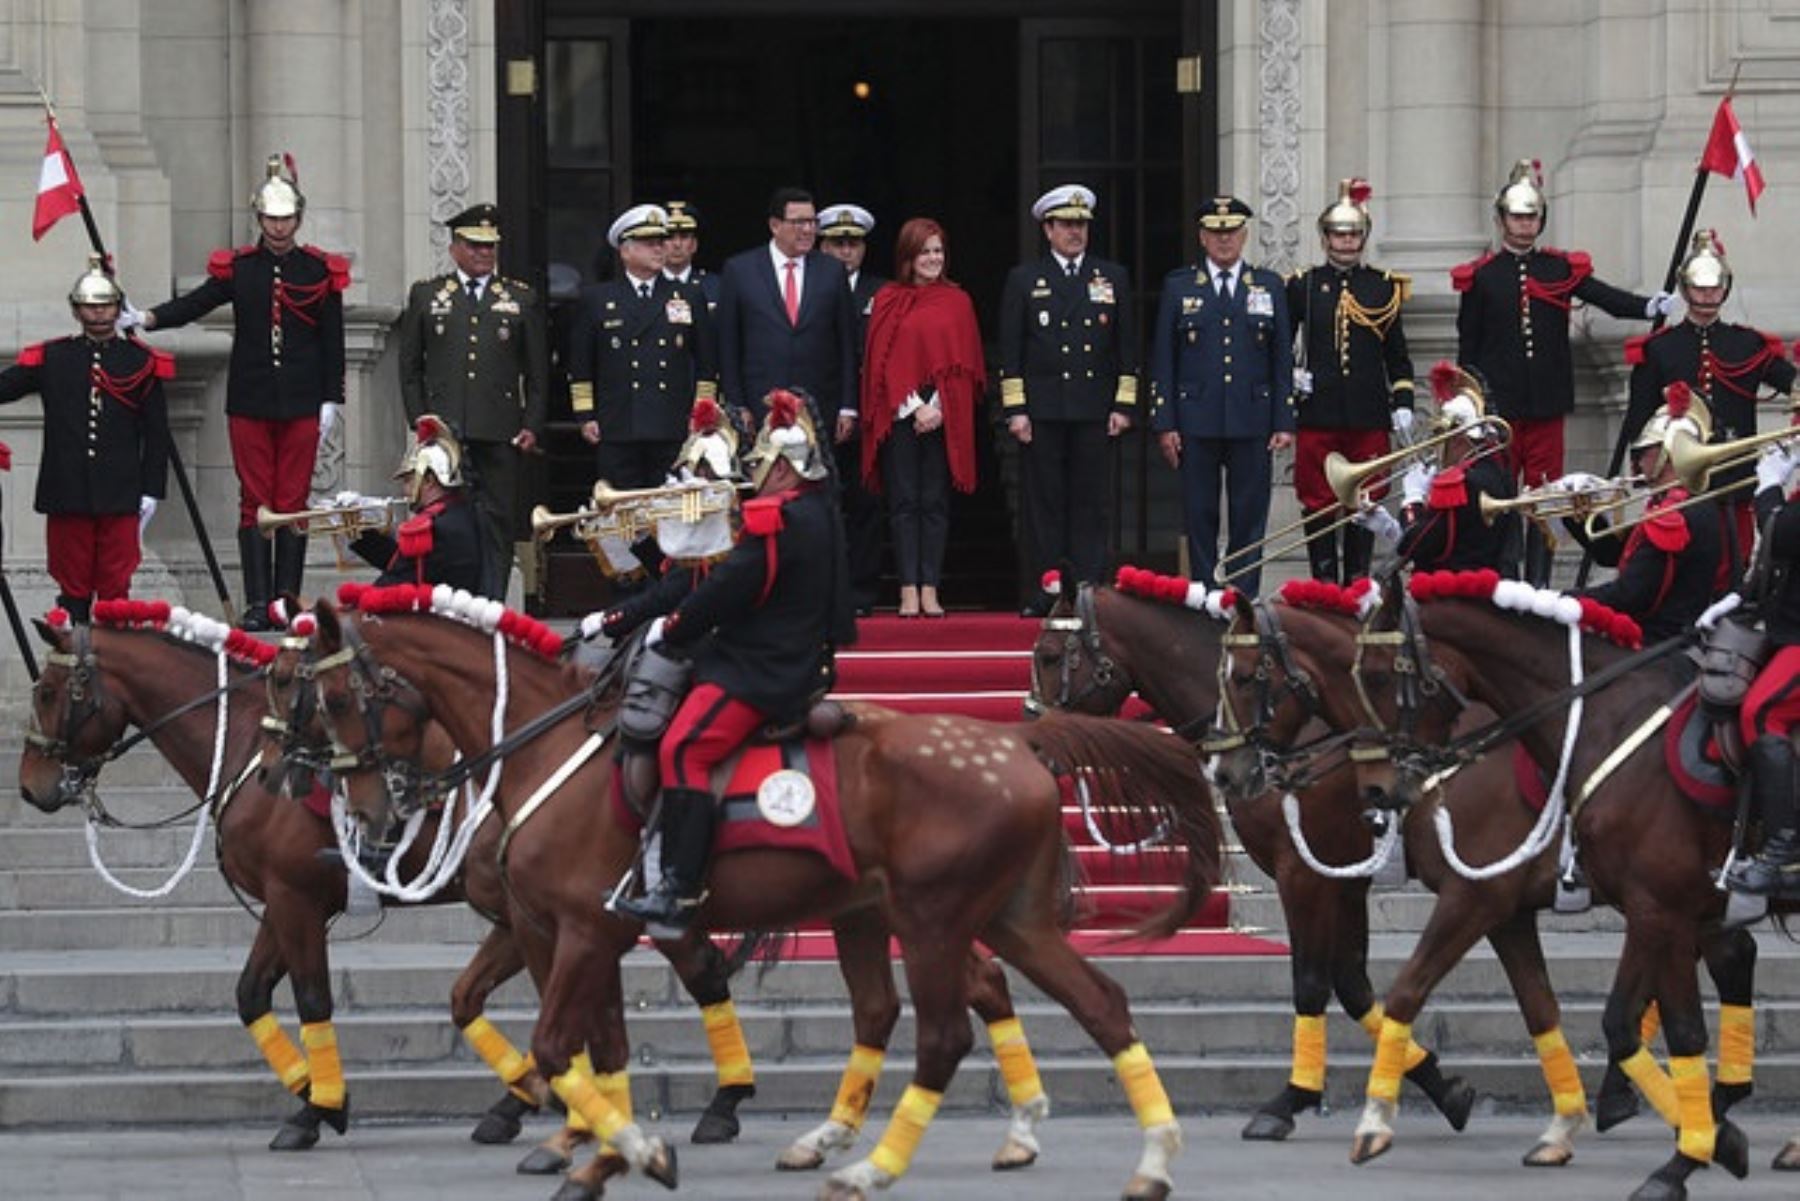 Vicepresidenta Marcedes Aráoz encabeza cambio de guardia en Palacio de Gobierno en homenaje al Día de las Fuerzas Armadas.